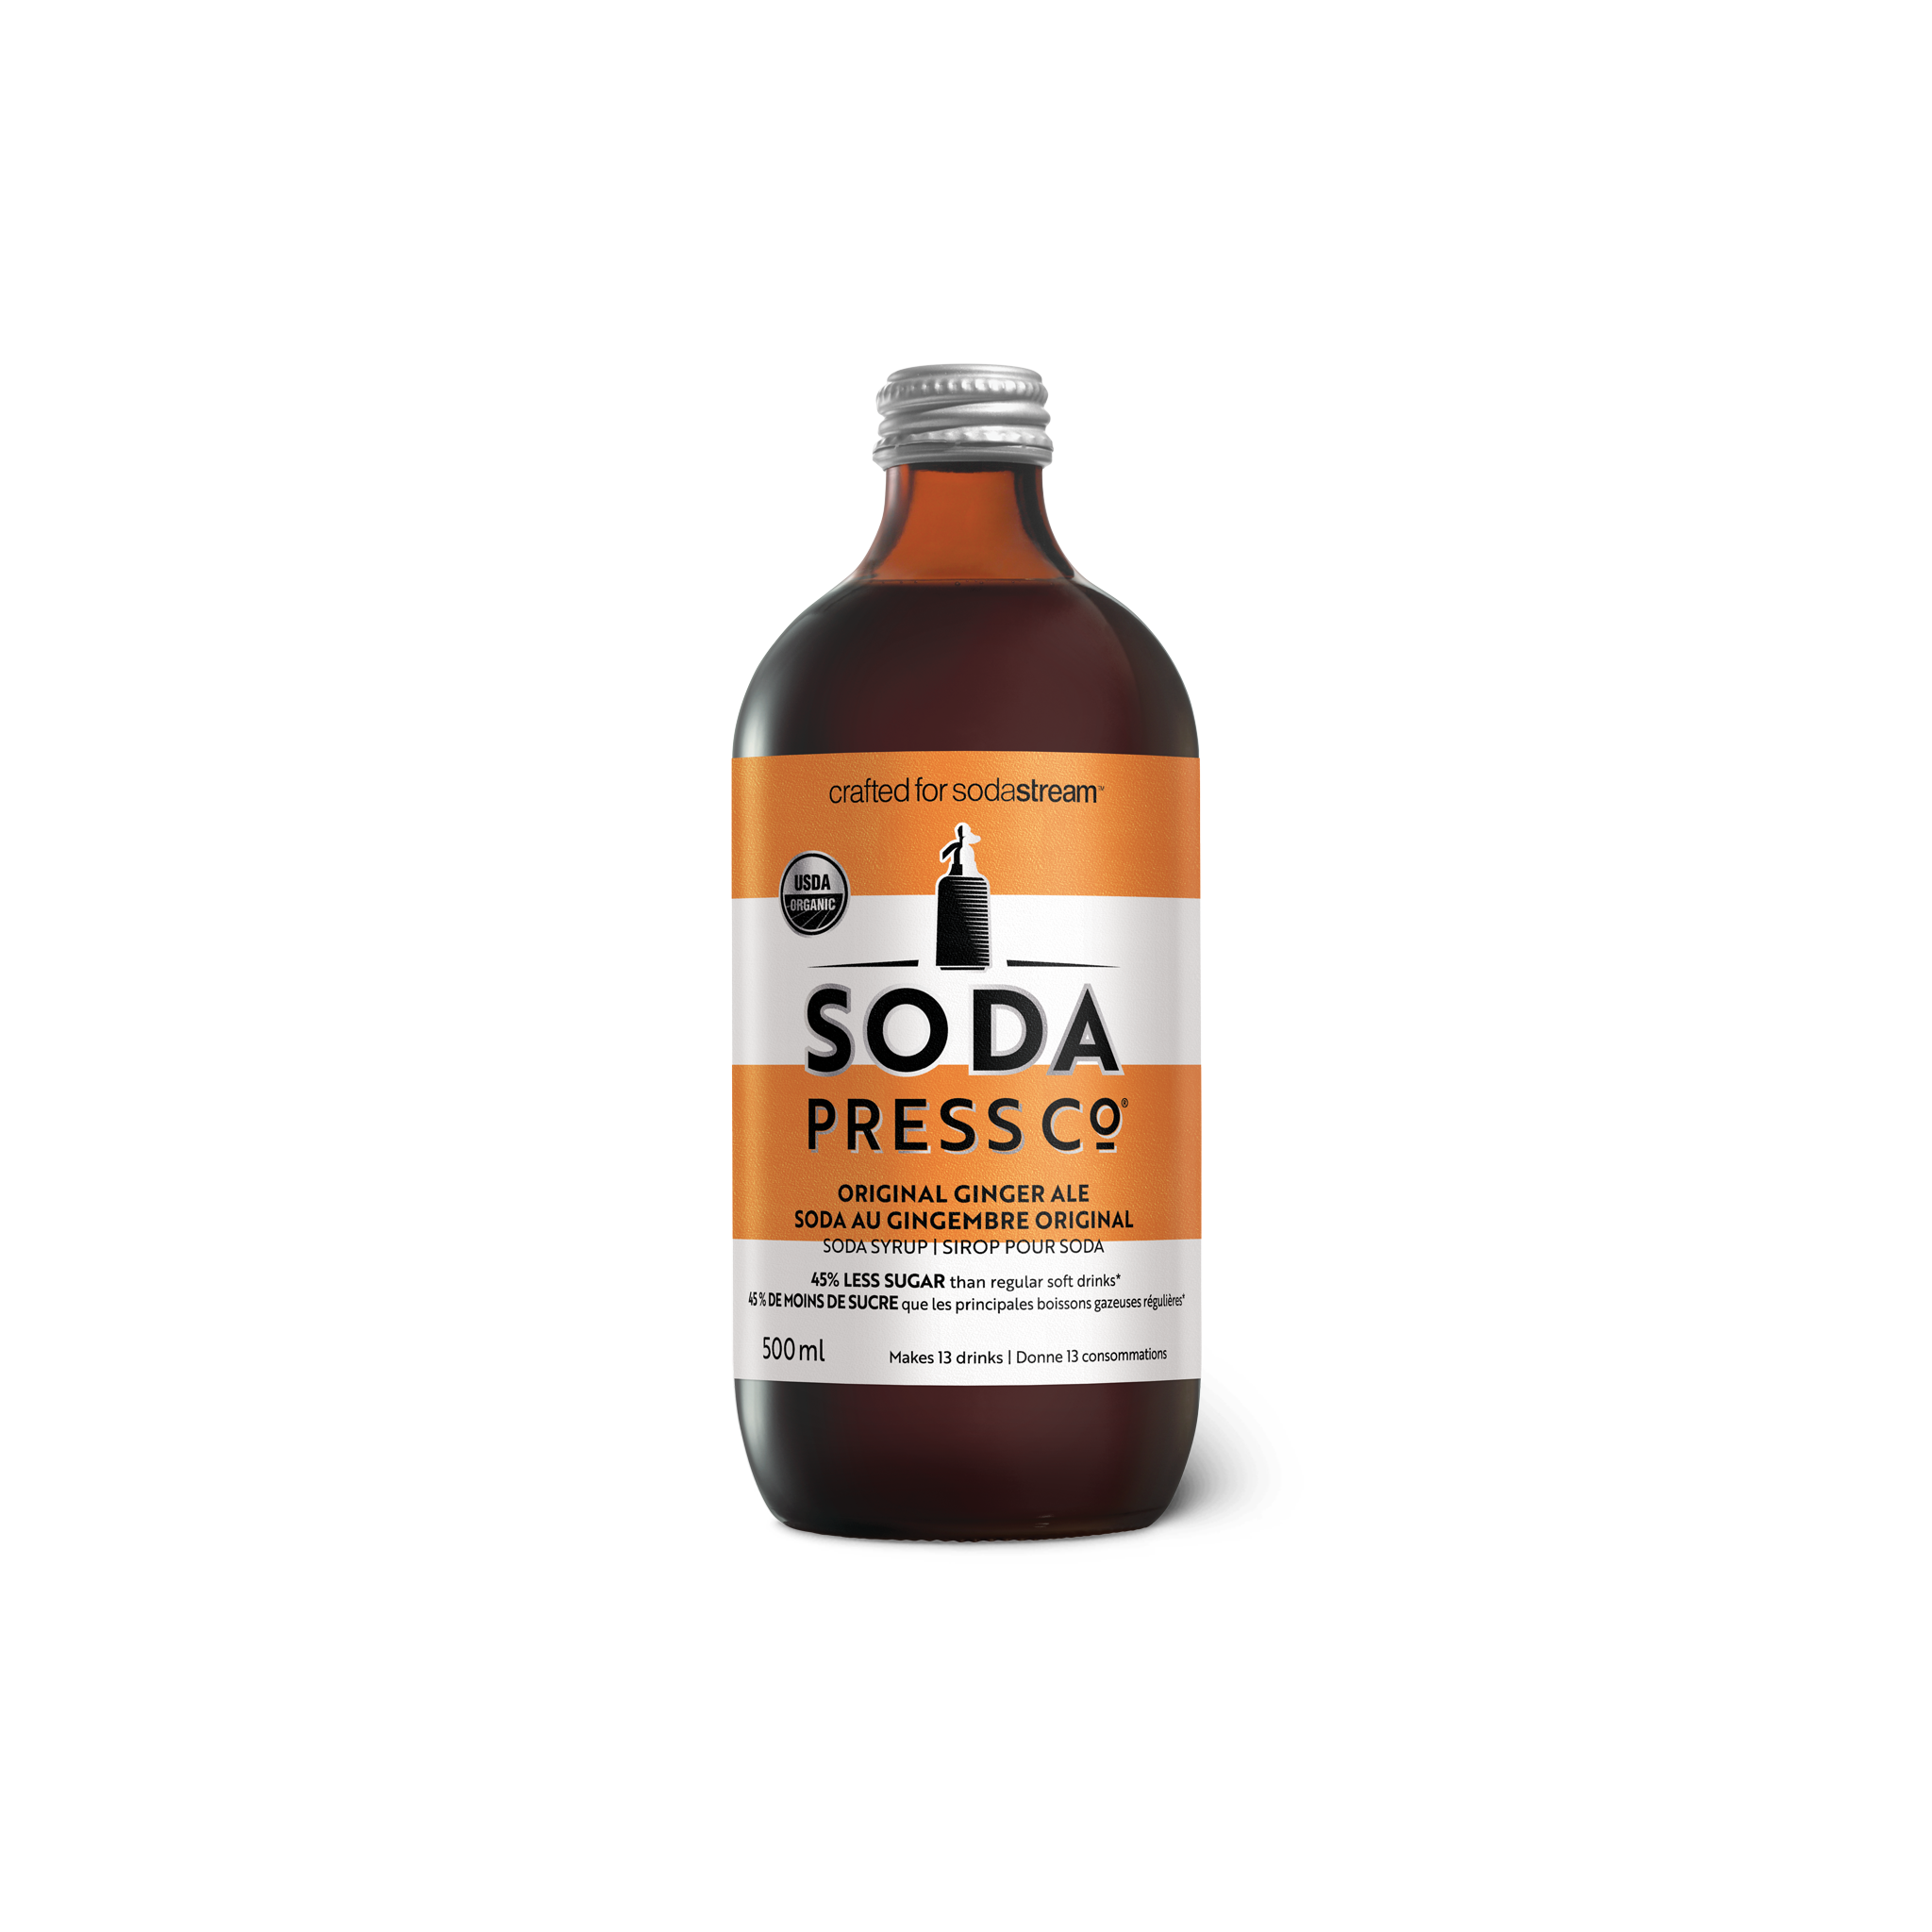 Soda Press - Ginger Ale sodastream